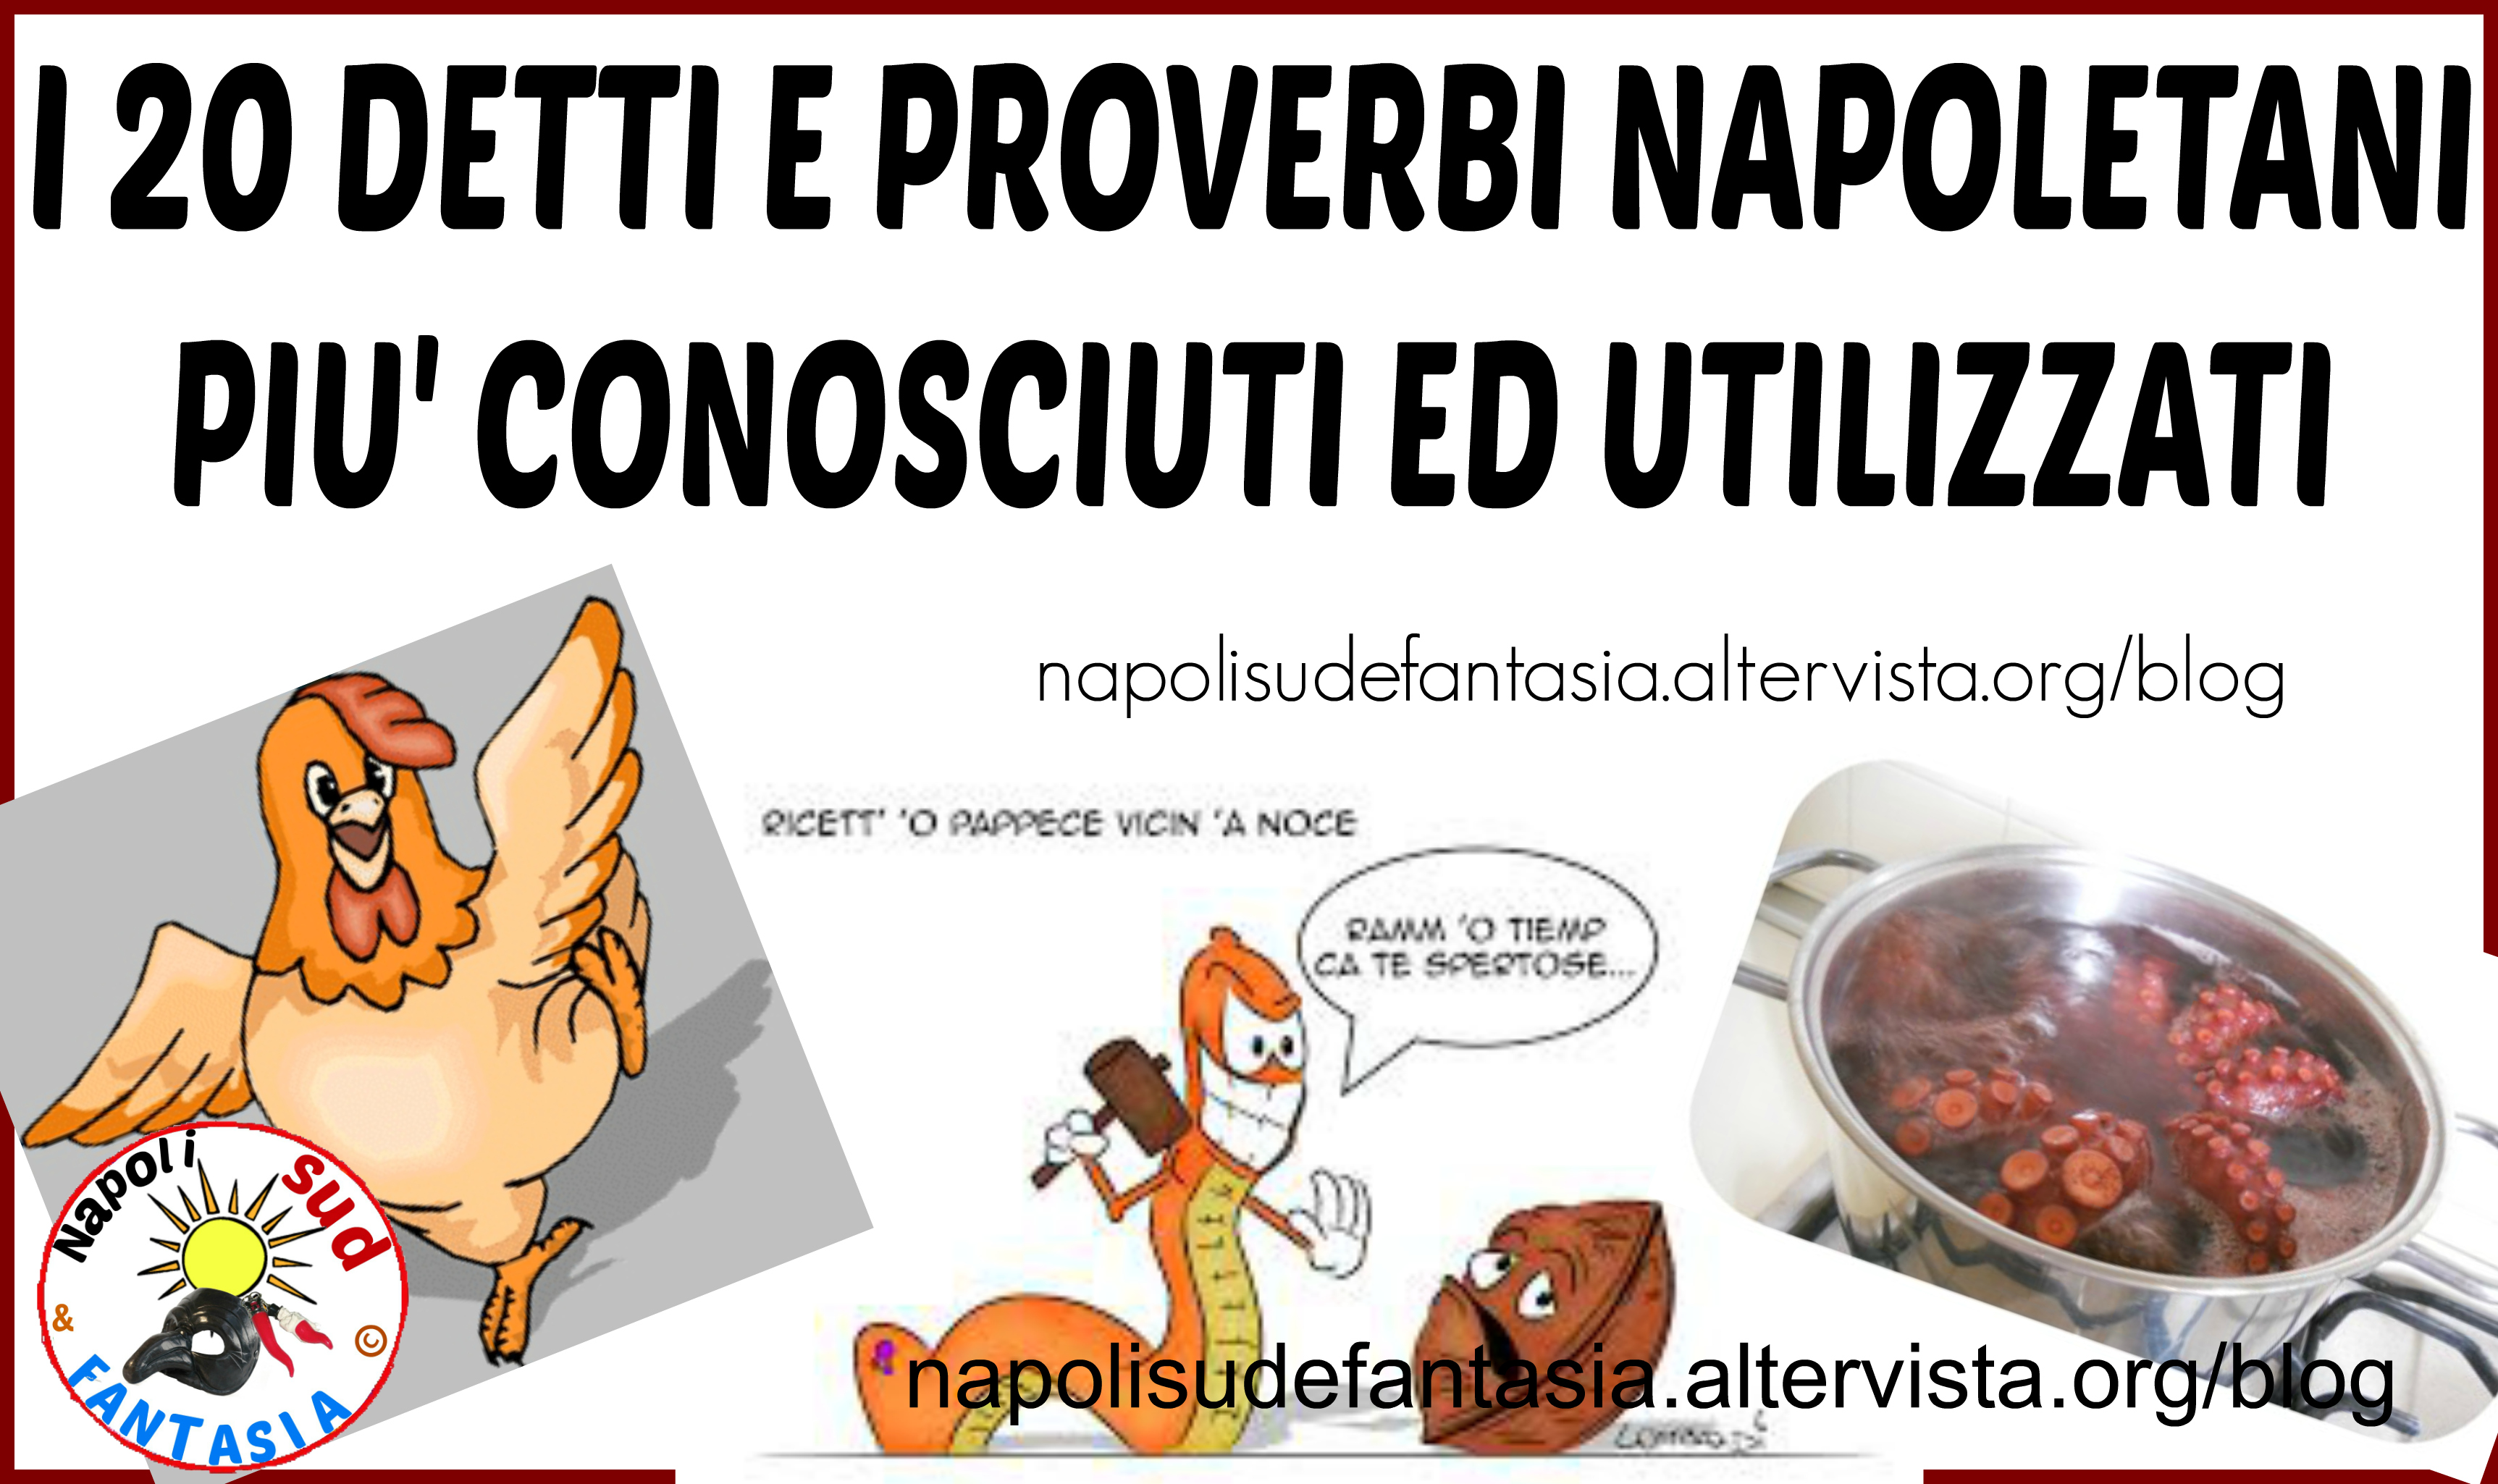 Classifica I 20 Detti E Proverbi Napoletani Piu Conosciuti Ed Utilizzati Napoli Sud E Fantasia Blog